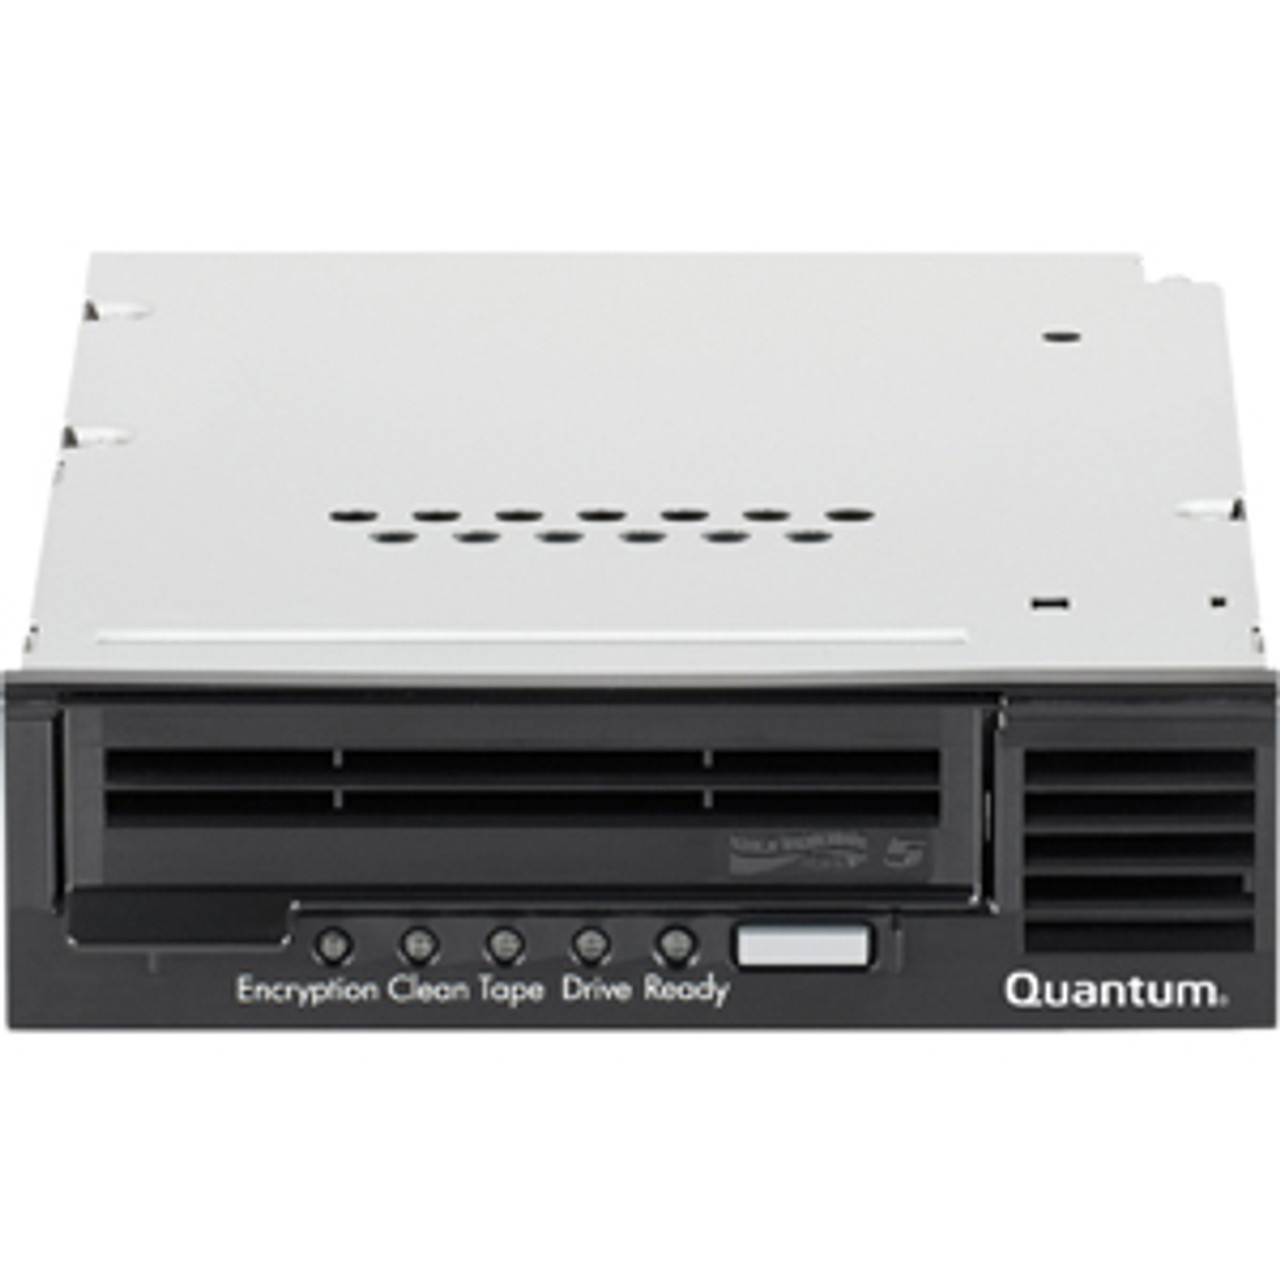 LSC1S-UTDN-L5HA - Quantum LSC1S-UTDN-L5HA LTO Ultrium 5 Tape Drive - 1.50 TB (Native)/3 TB (Compressed) - SAS